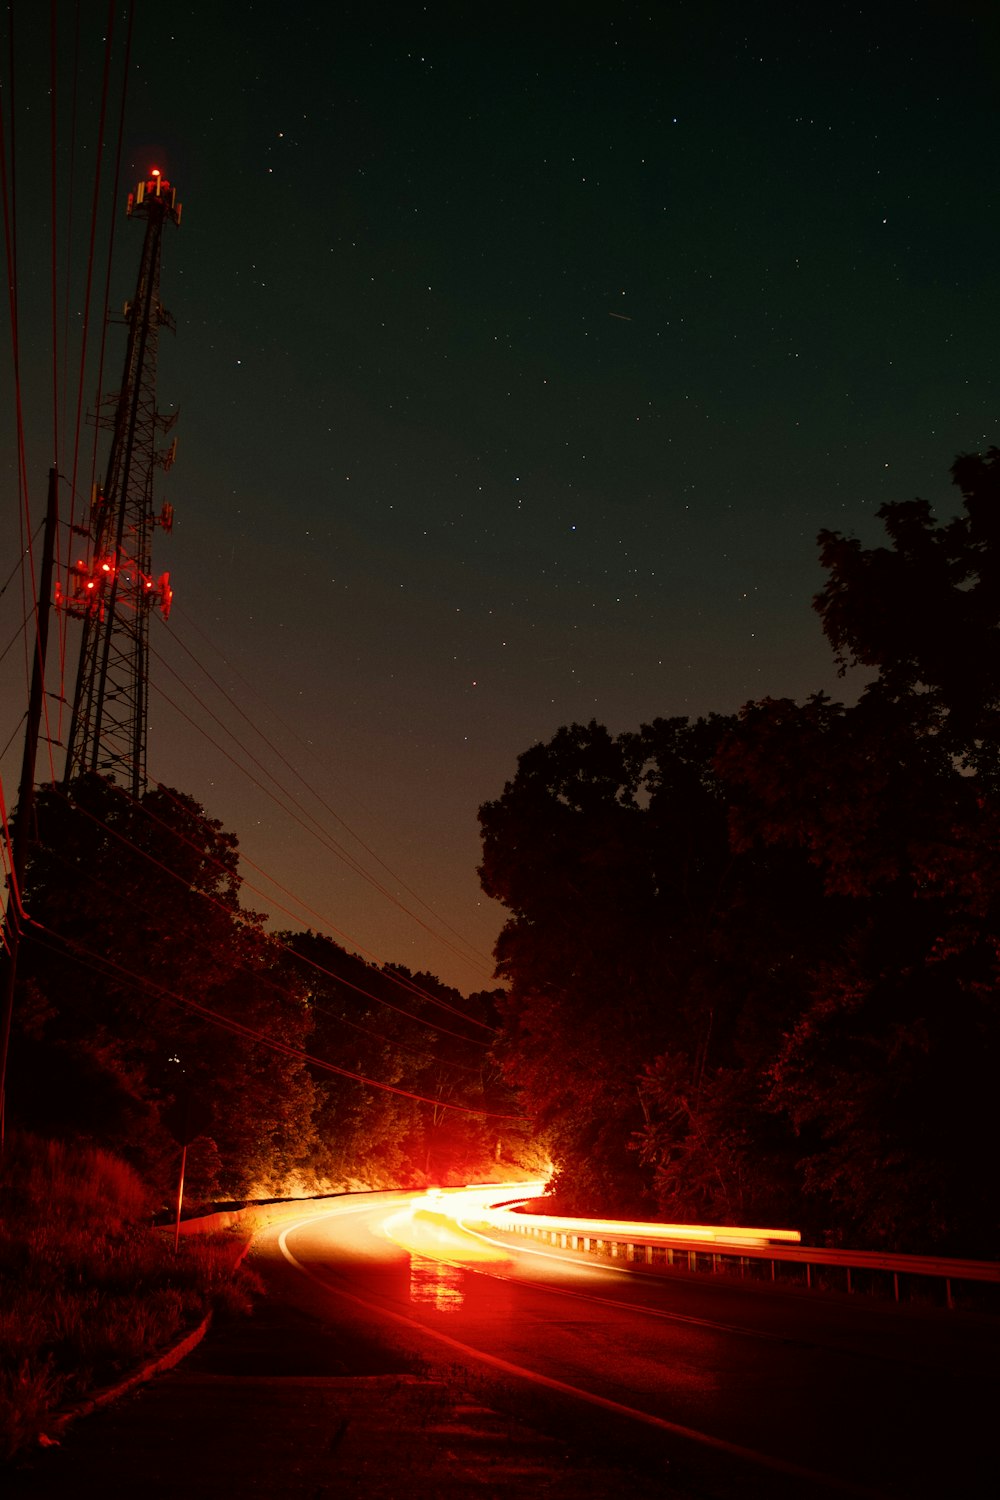 silueta de árboles bajo la noche estrellada